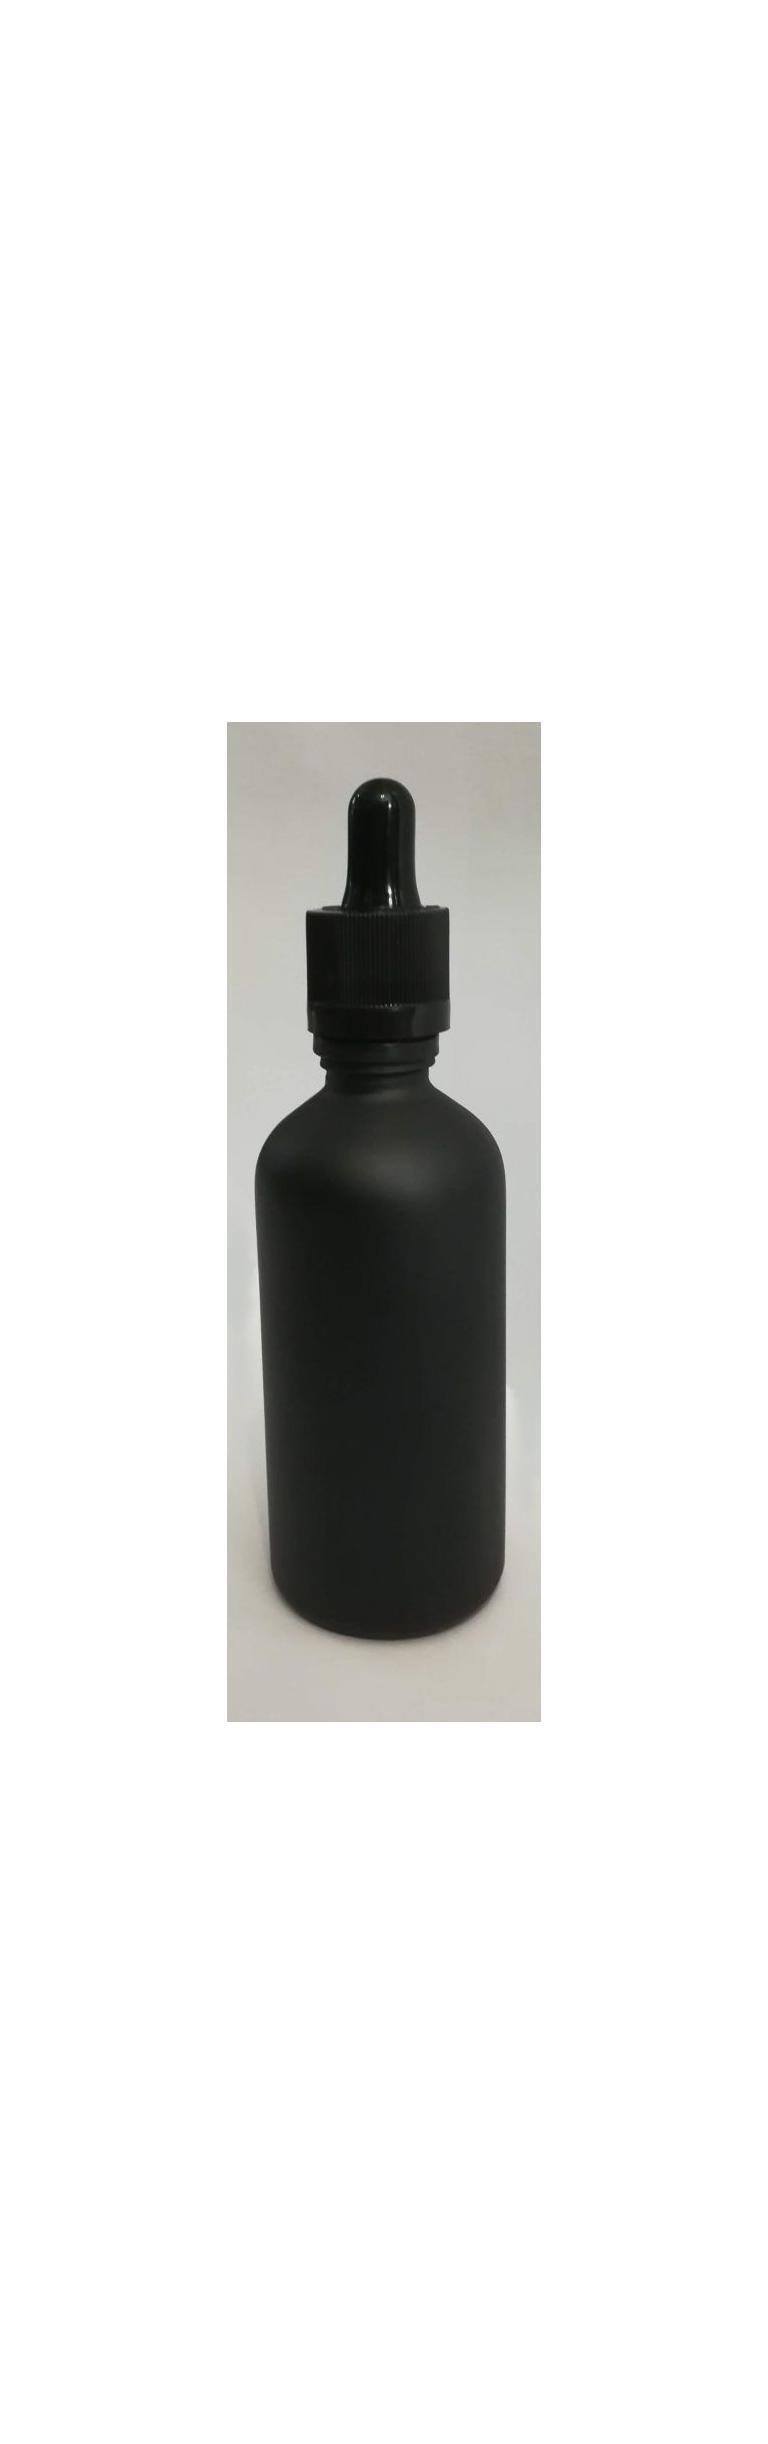 3050100ml Matte Black Bottles